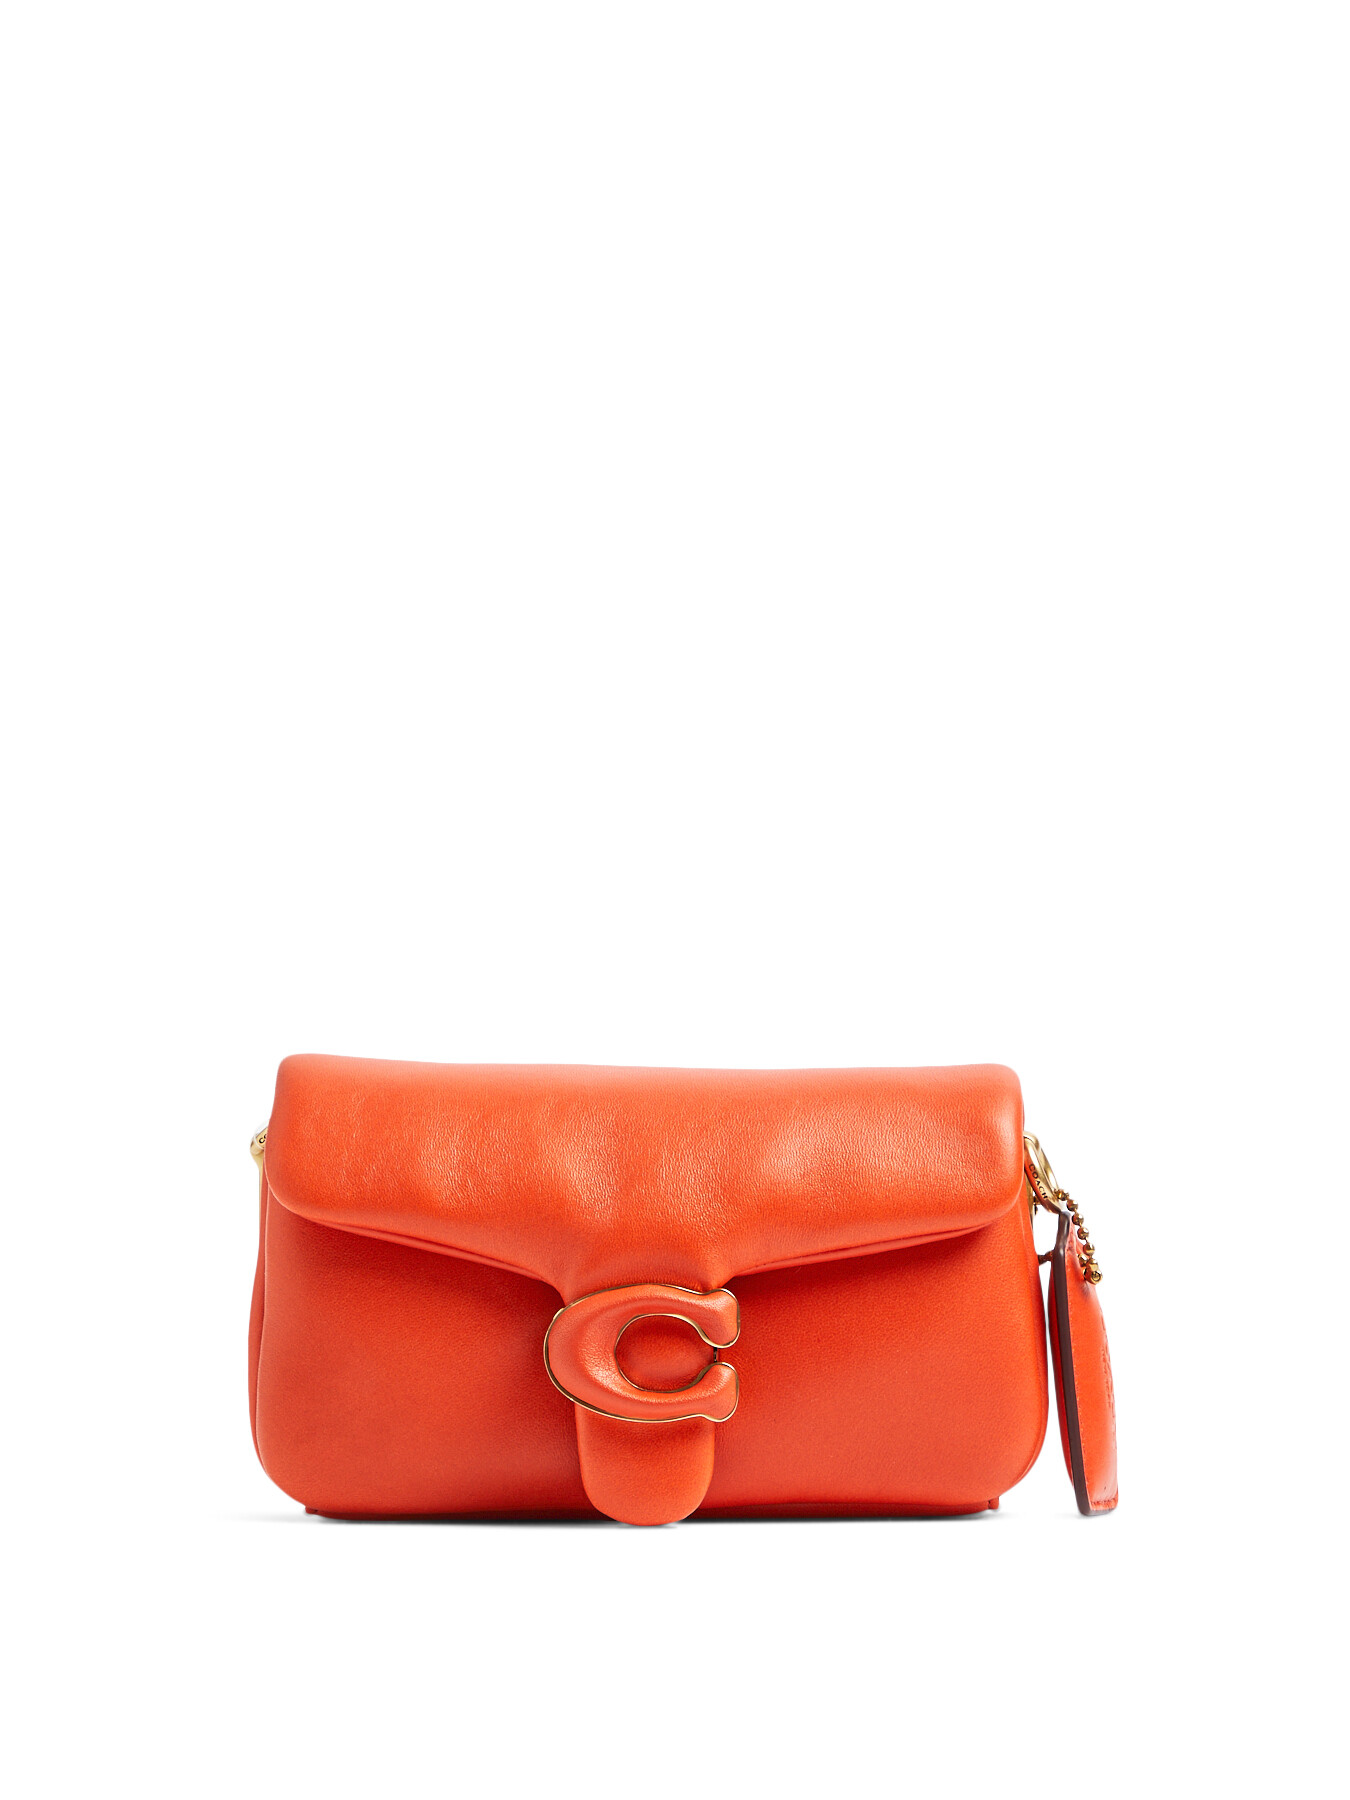 Coach C4823 Soft Tabby Shoulder Bag Orange Red Leather 195031486906 | eBay